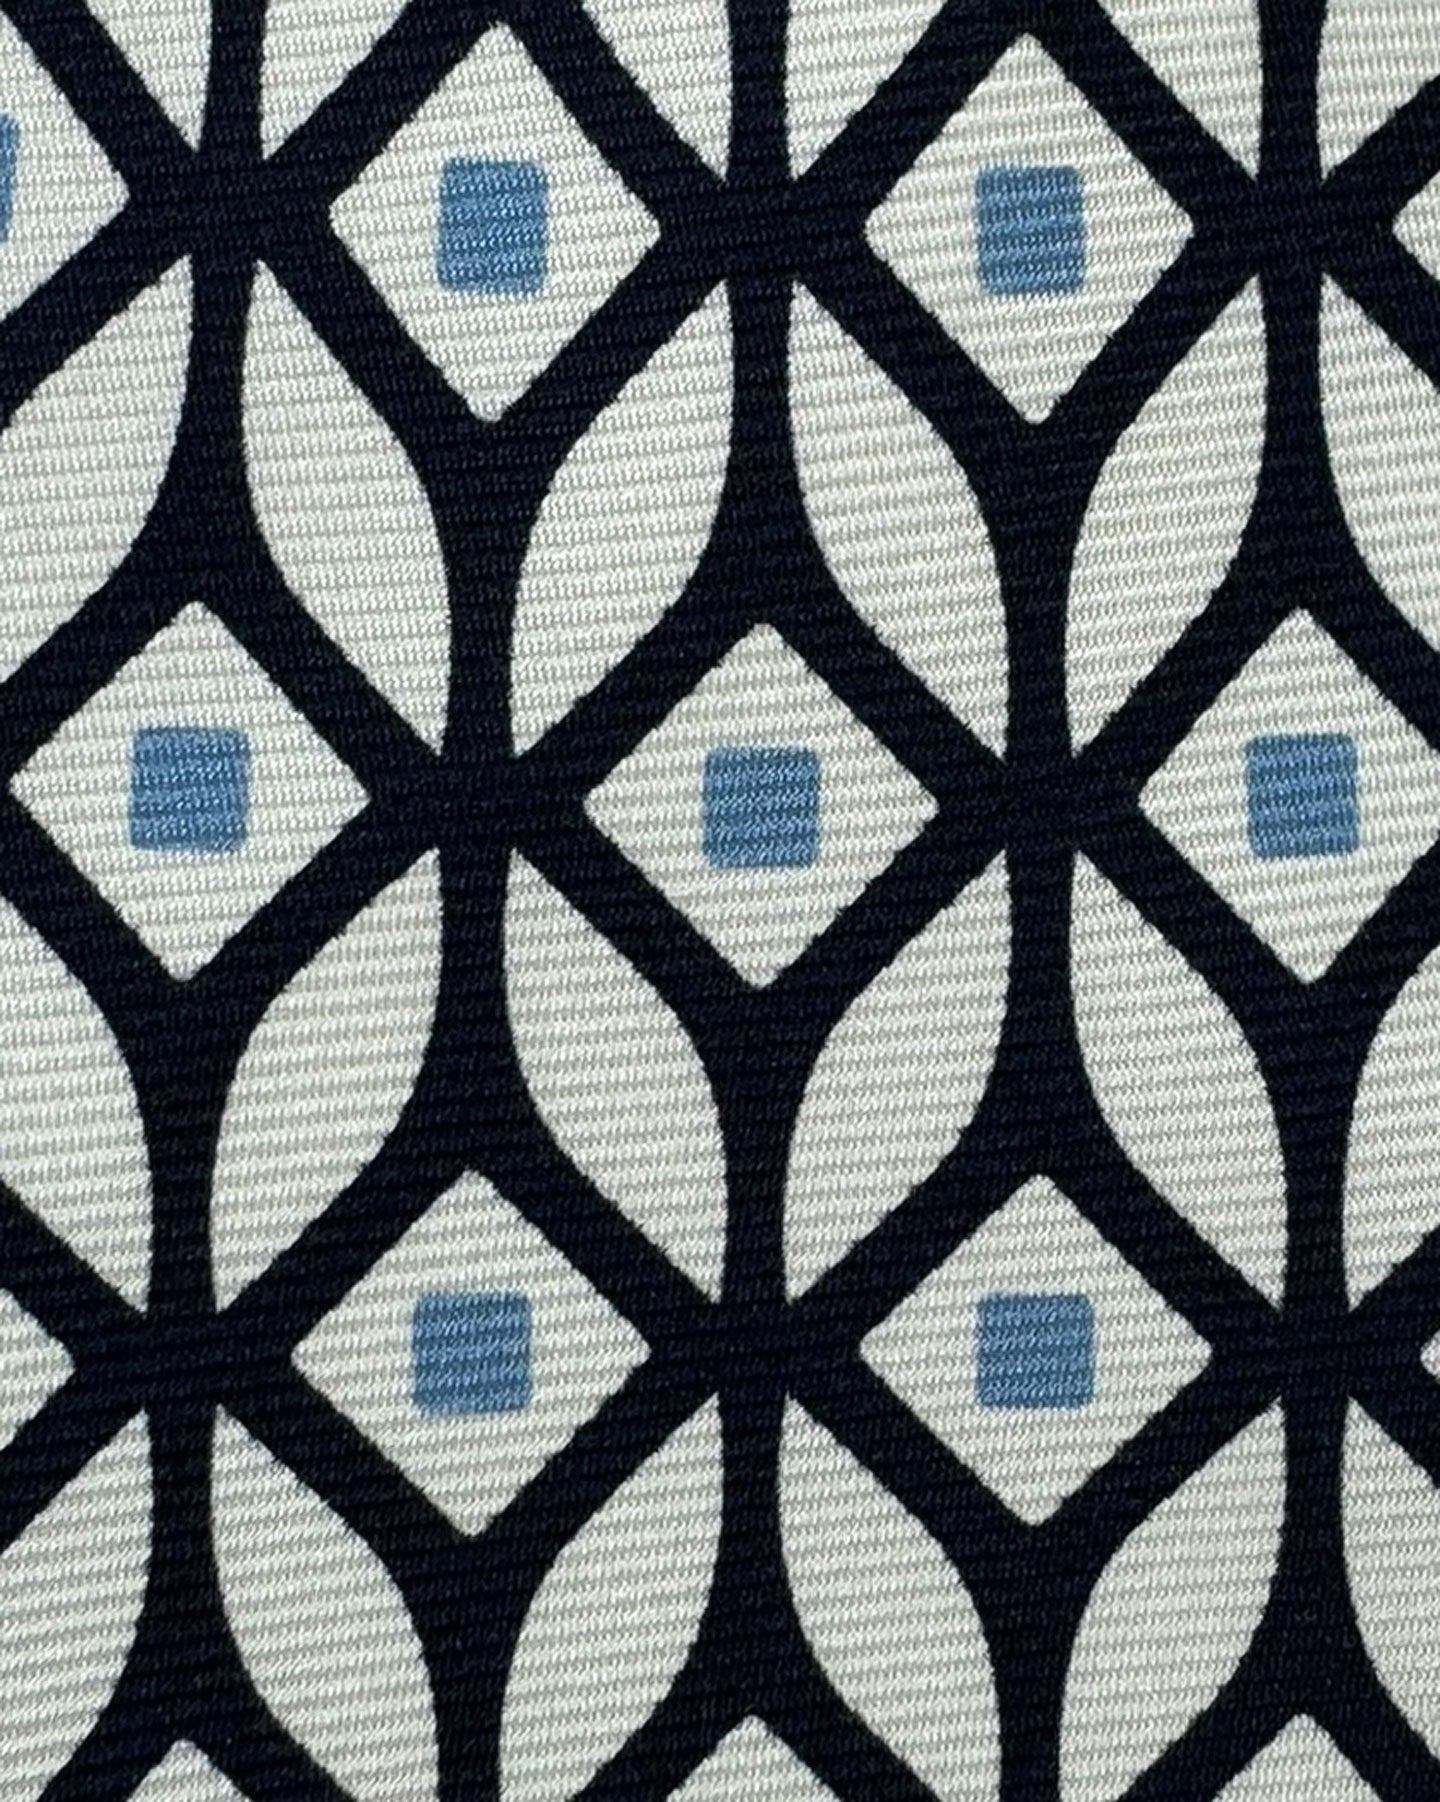 Kiton Tie White Black Blue Geometric - Sevenfold Necktie